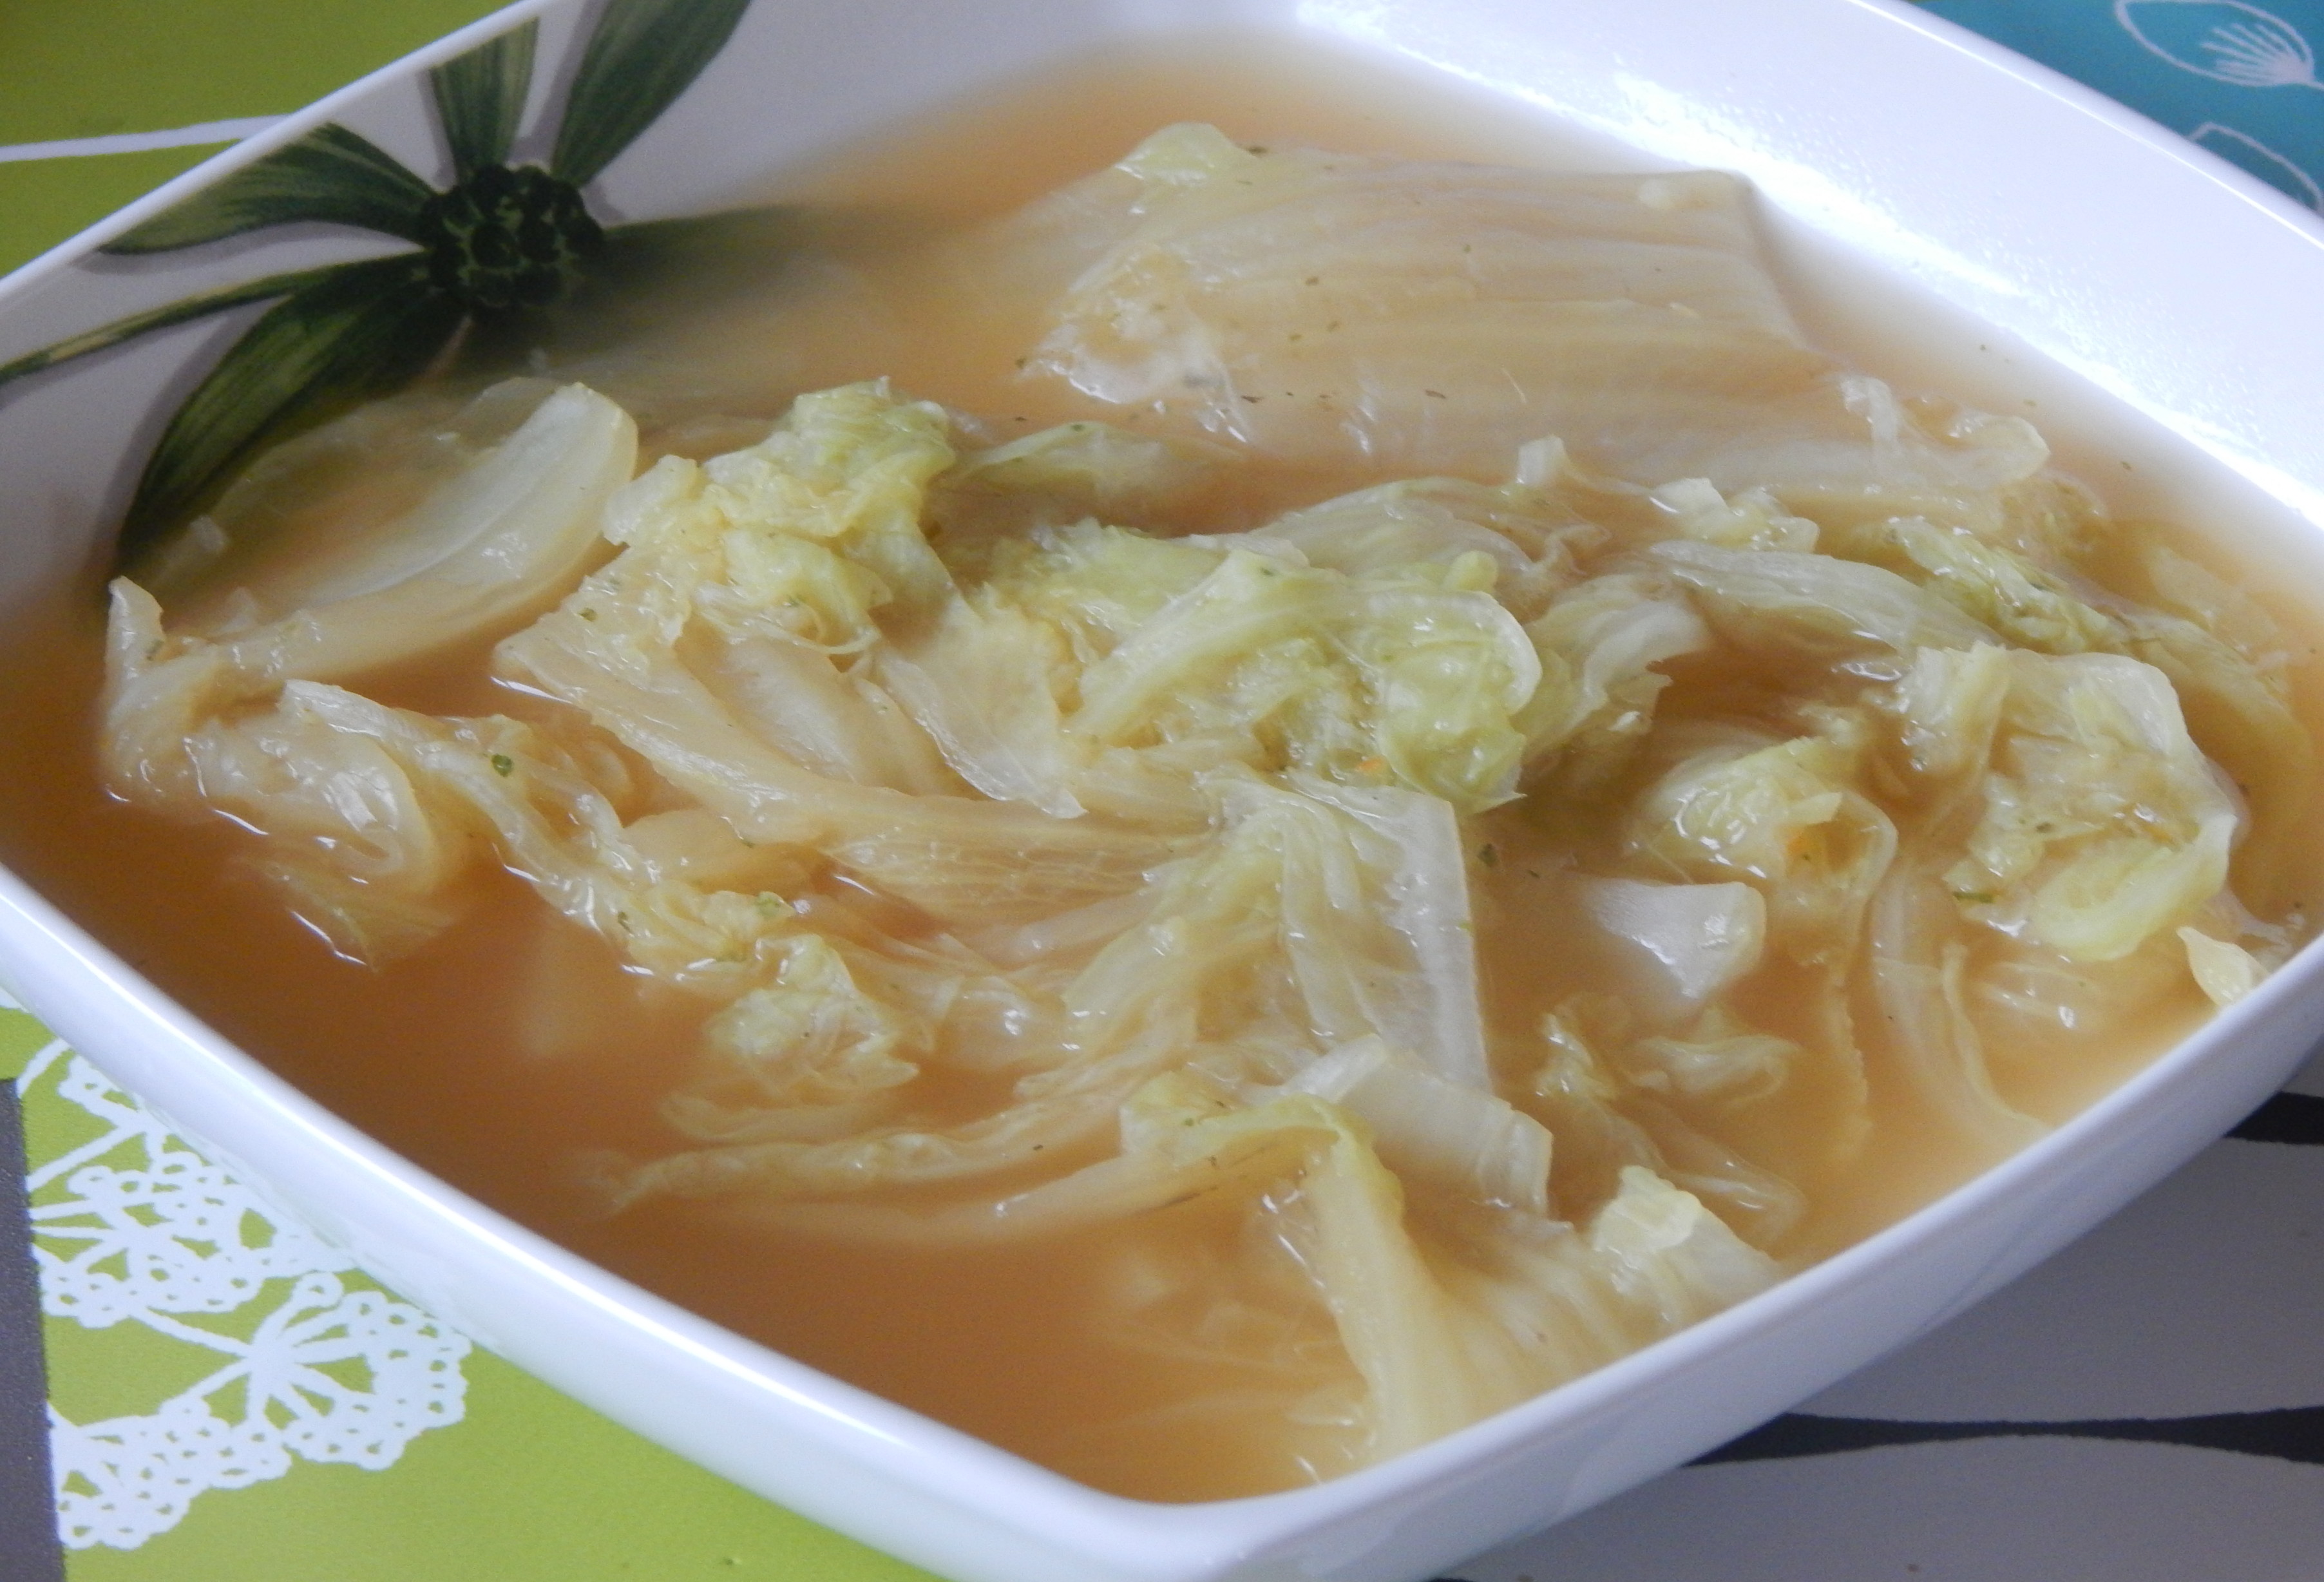 soupe au choux chinois minceur - les recettes de rééquilibrage alimentaire  coco